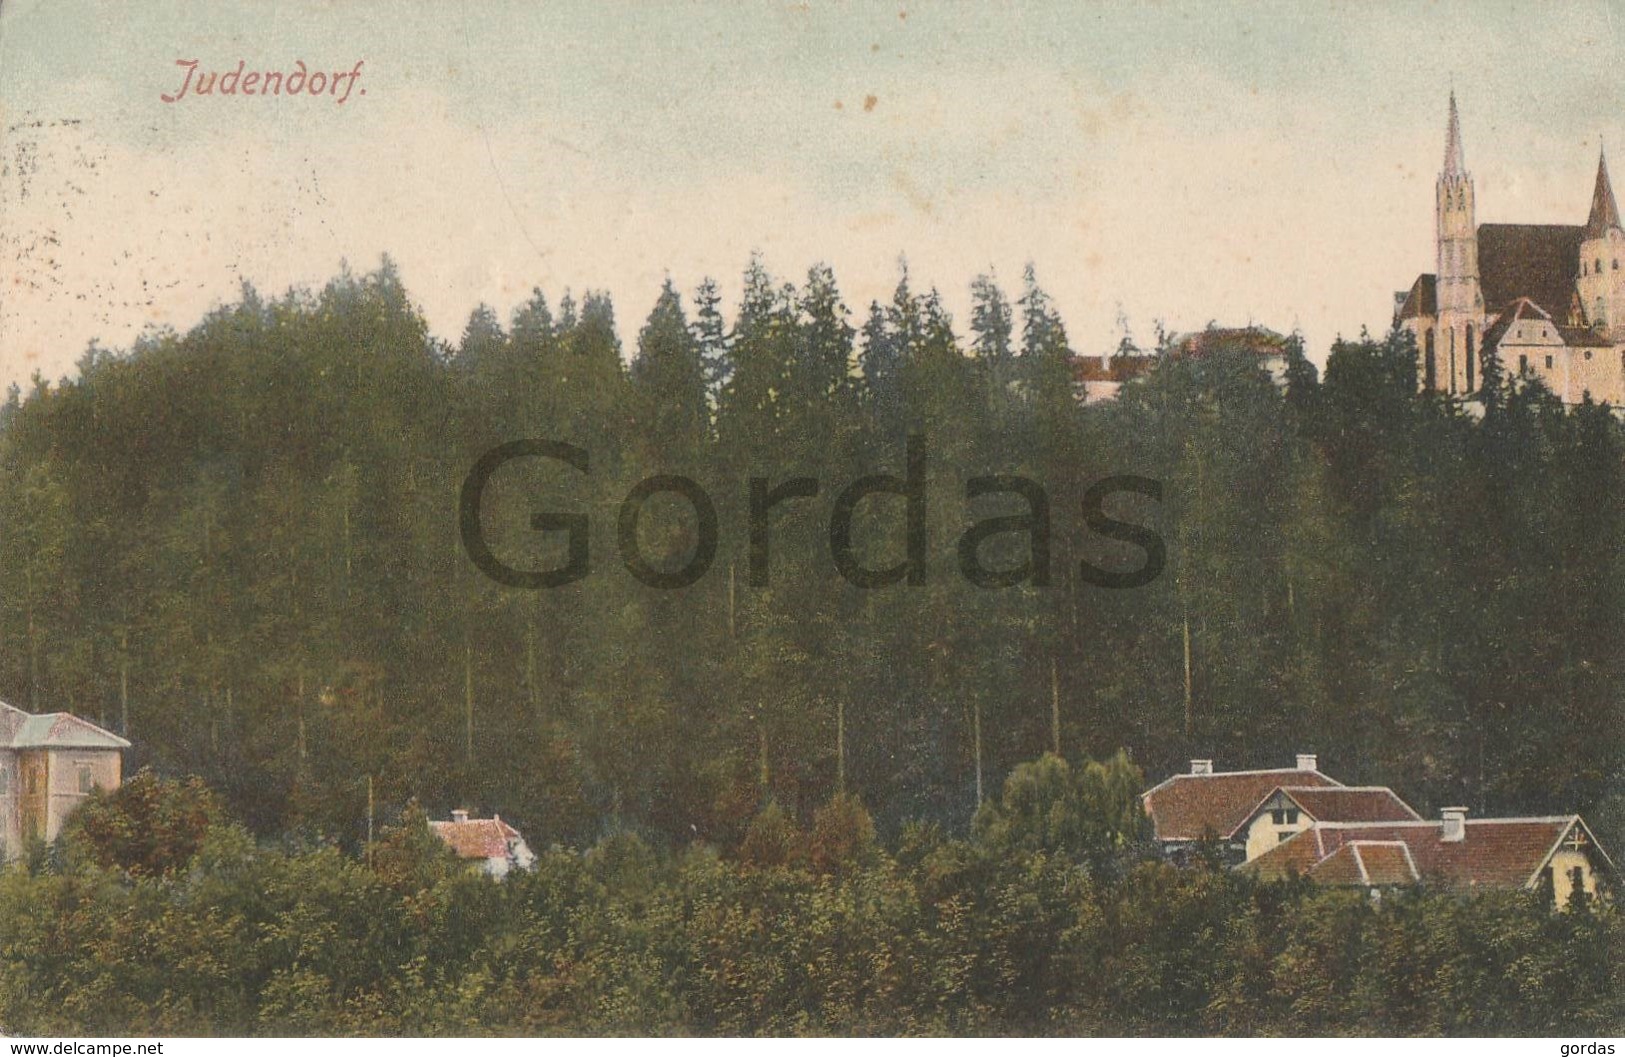 Austria - Judendorf - Judendorf-Strassengel